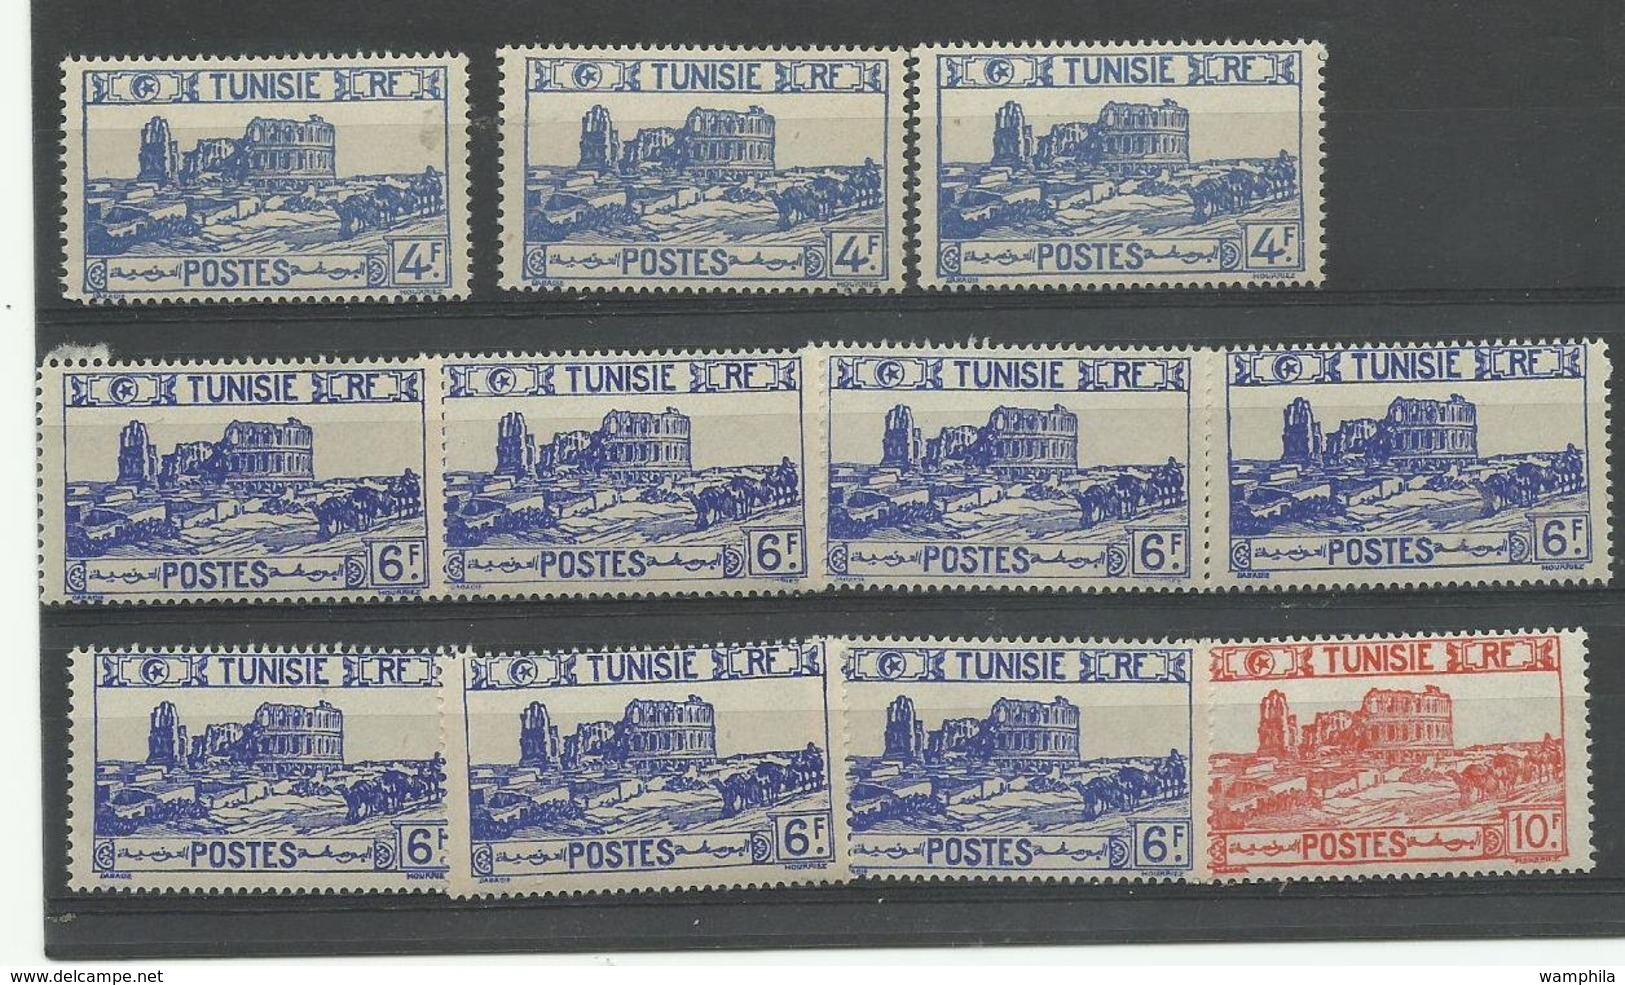 Tunisie, un lot de timbres neufs **